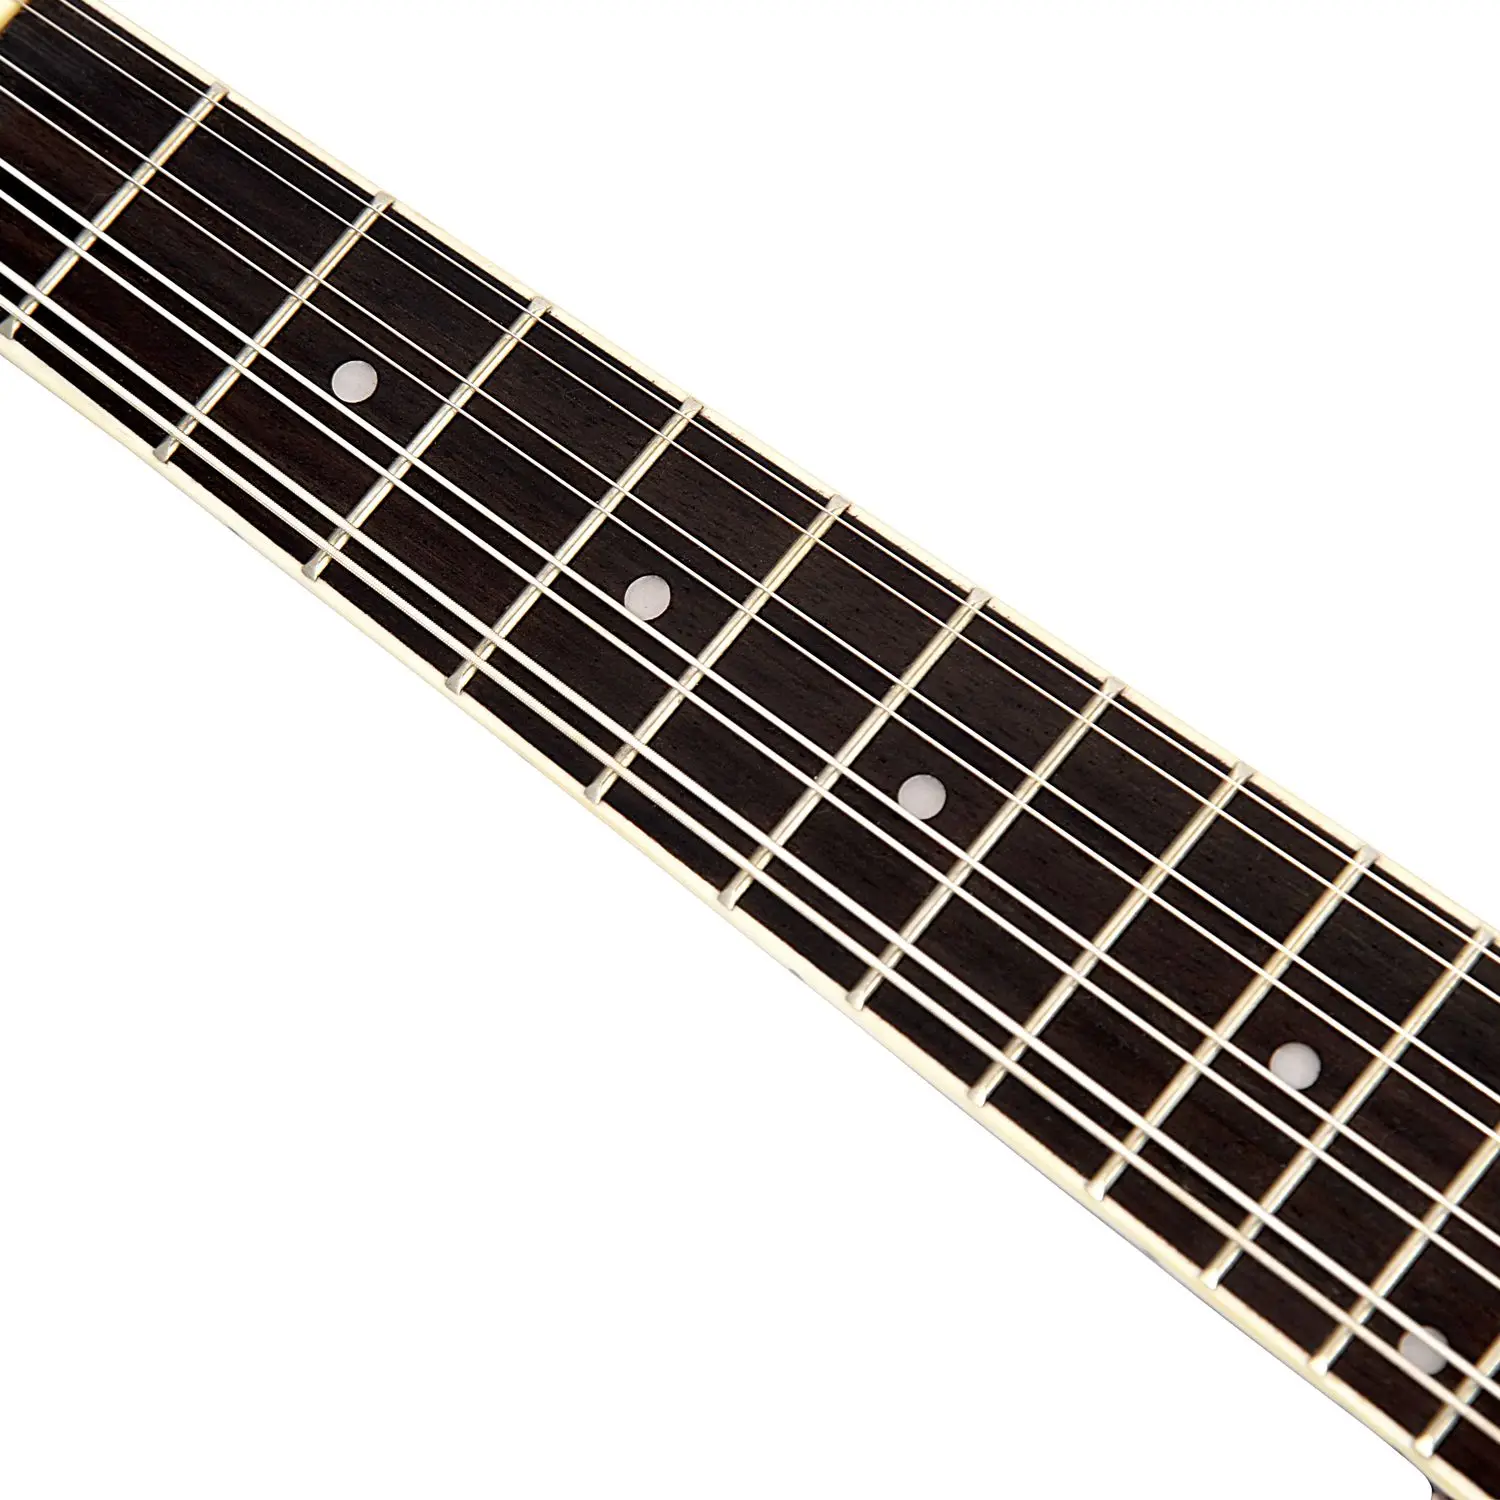 IRIN A-style mandolin Sunburst липа дерево с протиркой ткани регулируемый струнный инструмент 8 струн гитара для начинающих